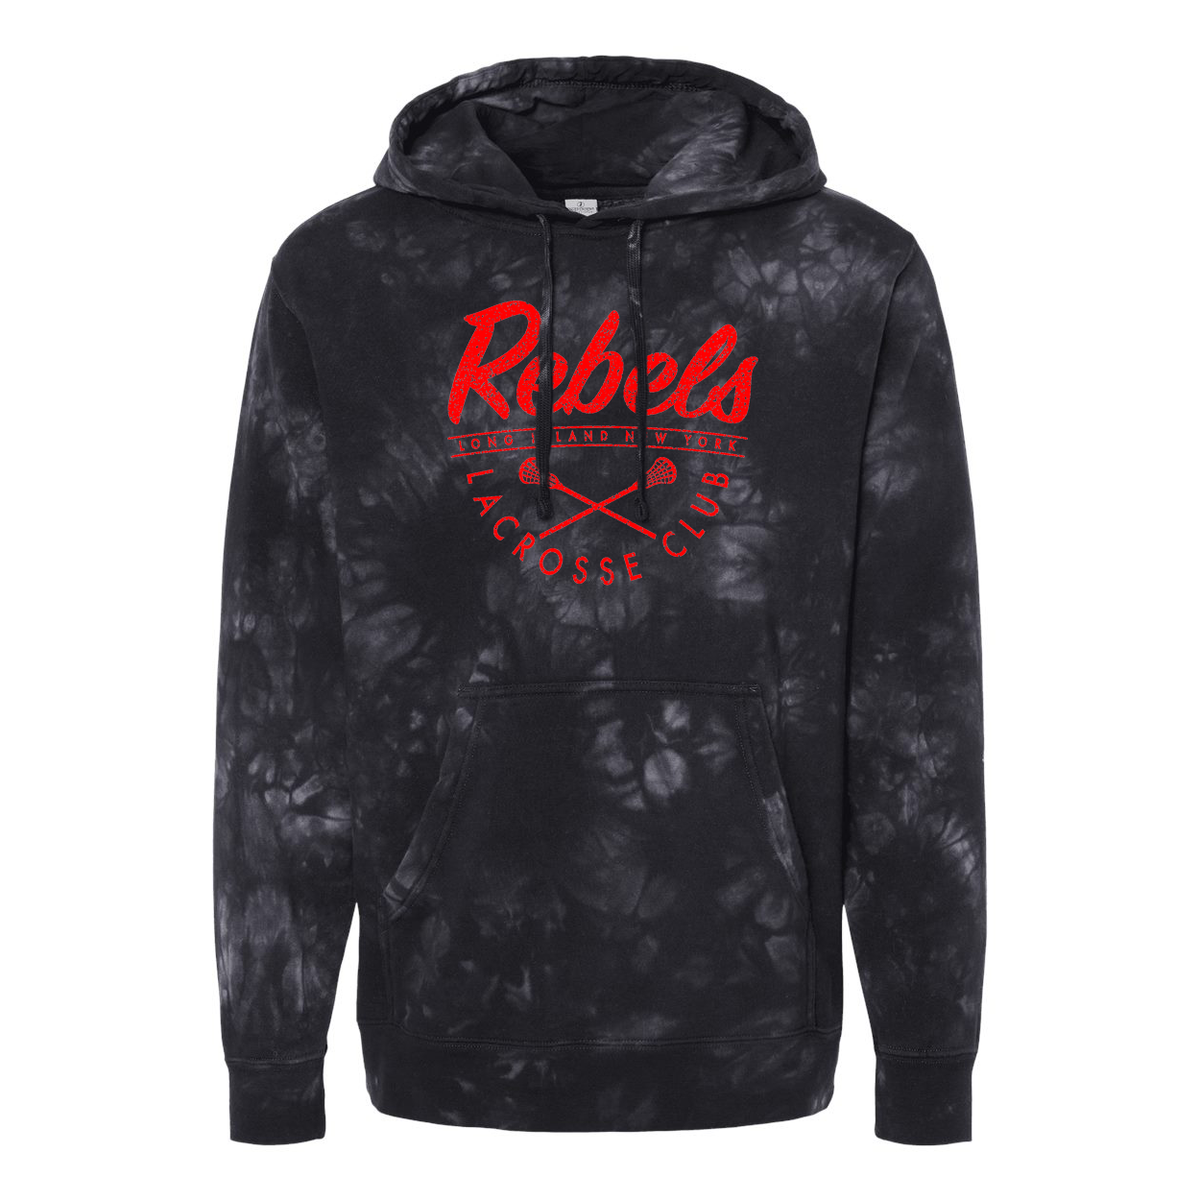 Rebels Lacrosse Pigment-Dyed Hooded Sweatshirt